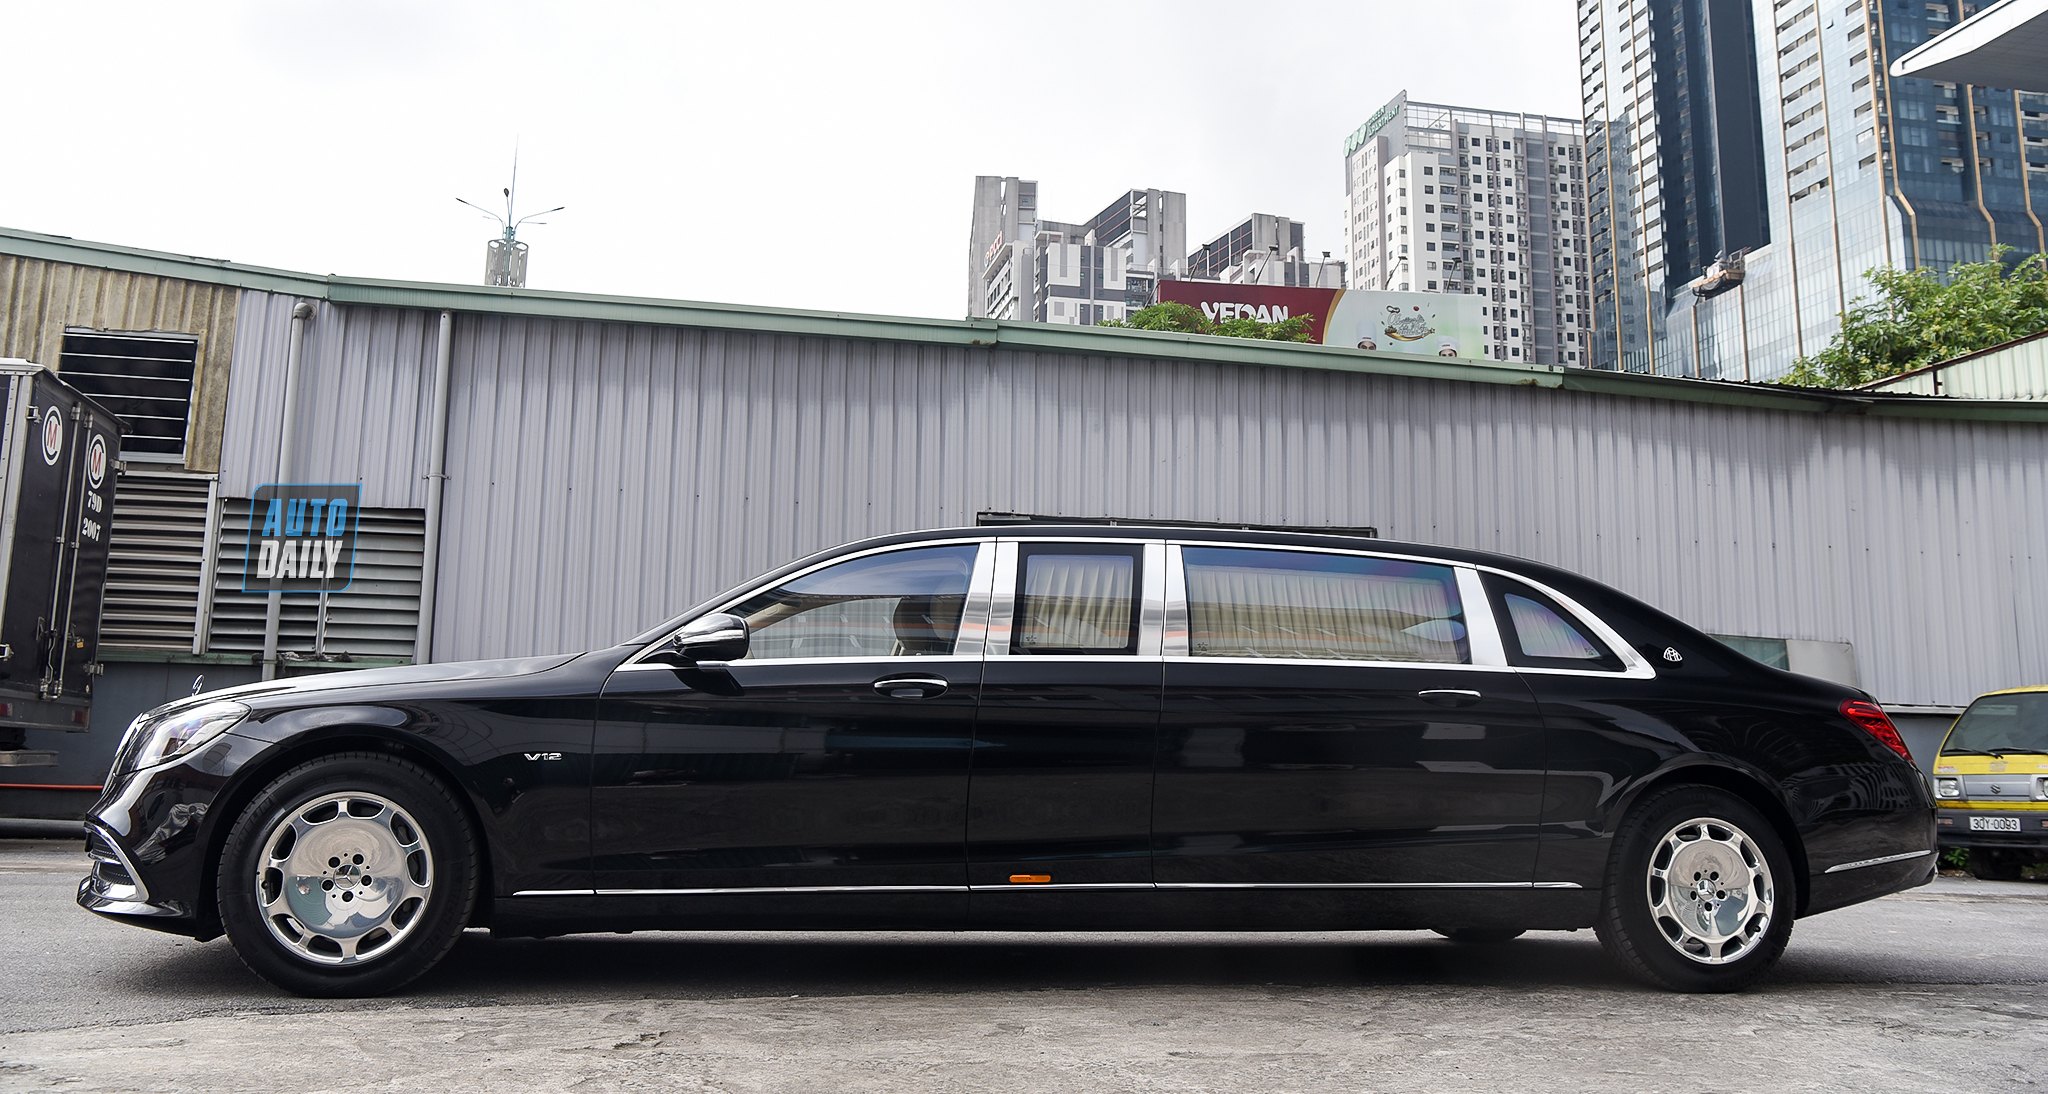 Limousine siêu sang cho 'Chủ tịch' Mercedes-Maybach S650 Pullman đẳng cấp cỡ nào? 1.jpg